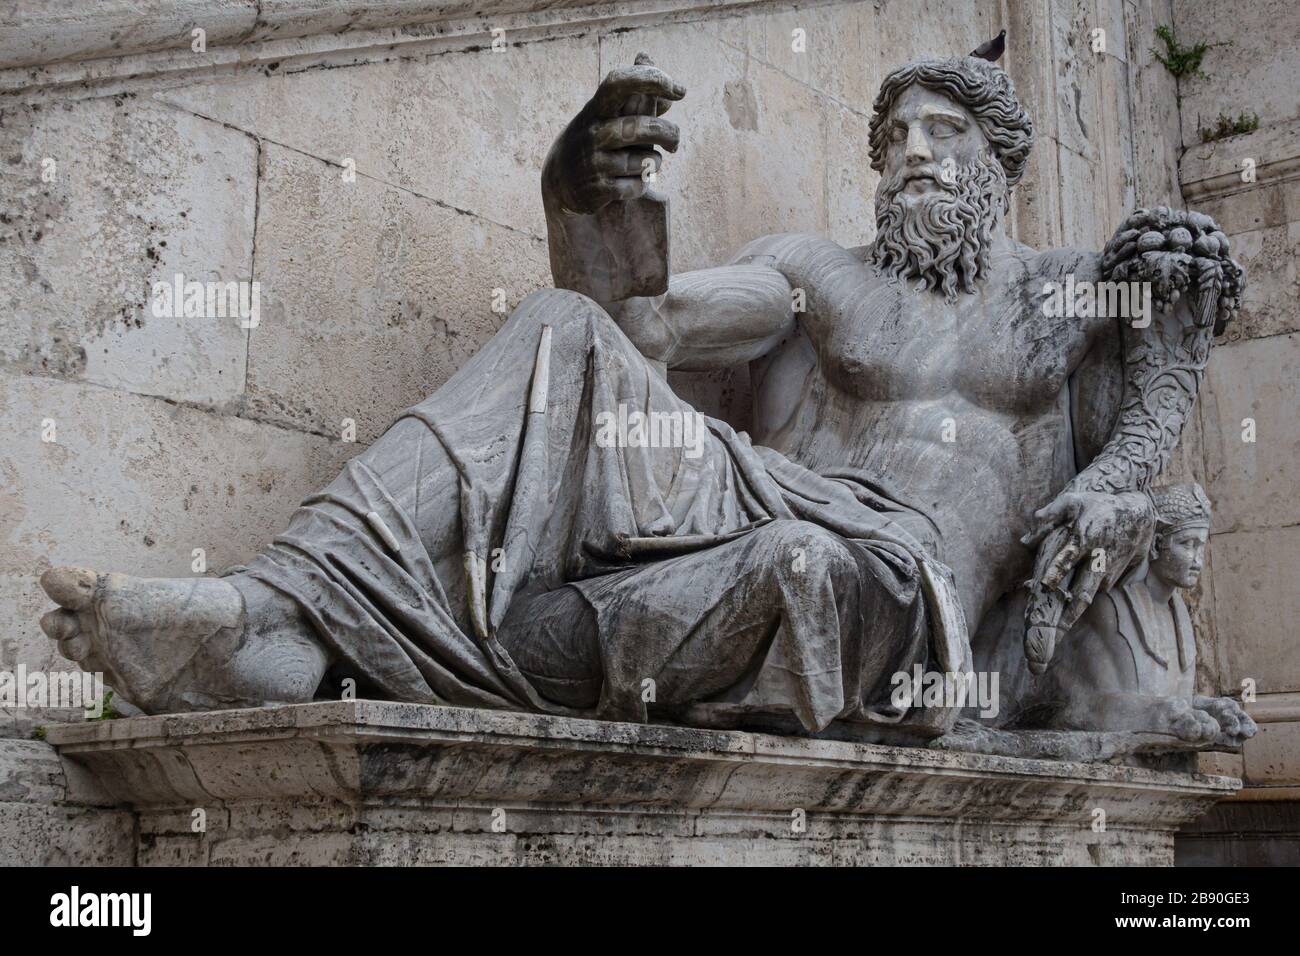 Antike römische Statue von Neptun, die scheinbar ein selfie nimmt. Lizenzfreies Foto. Stockfoto